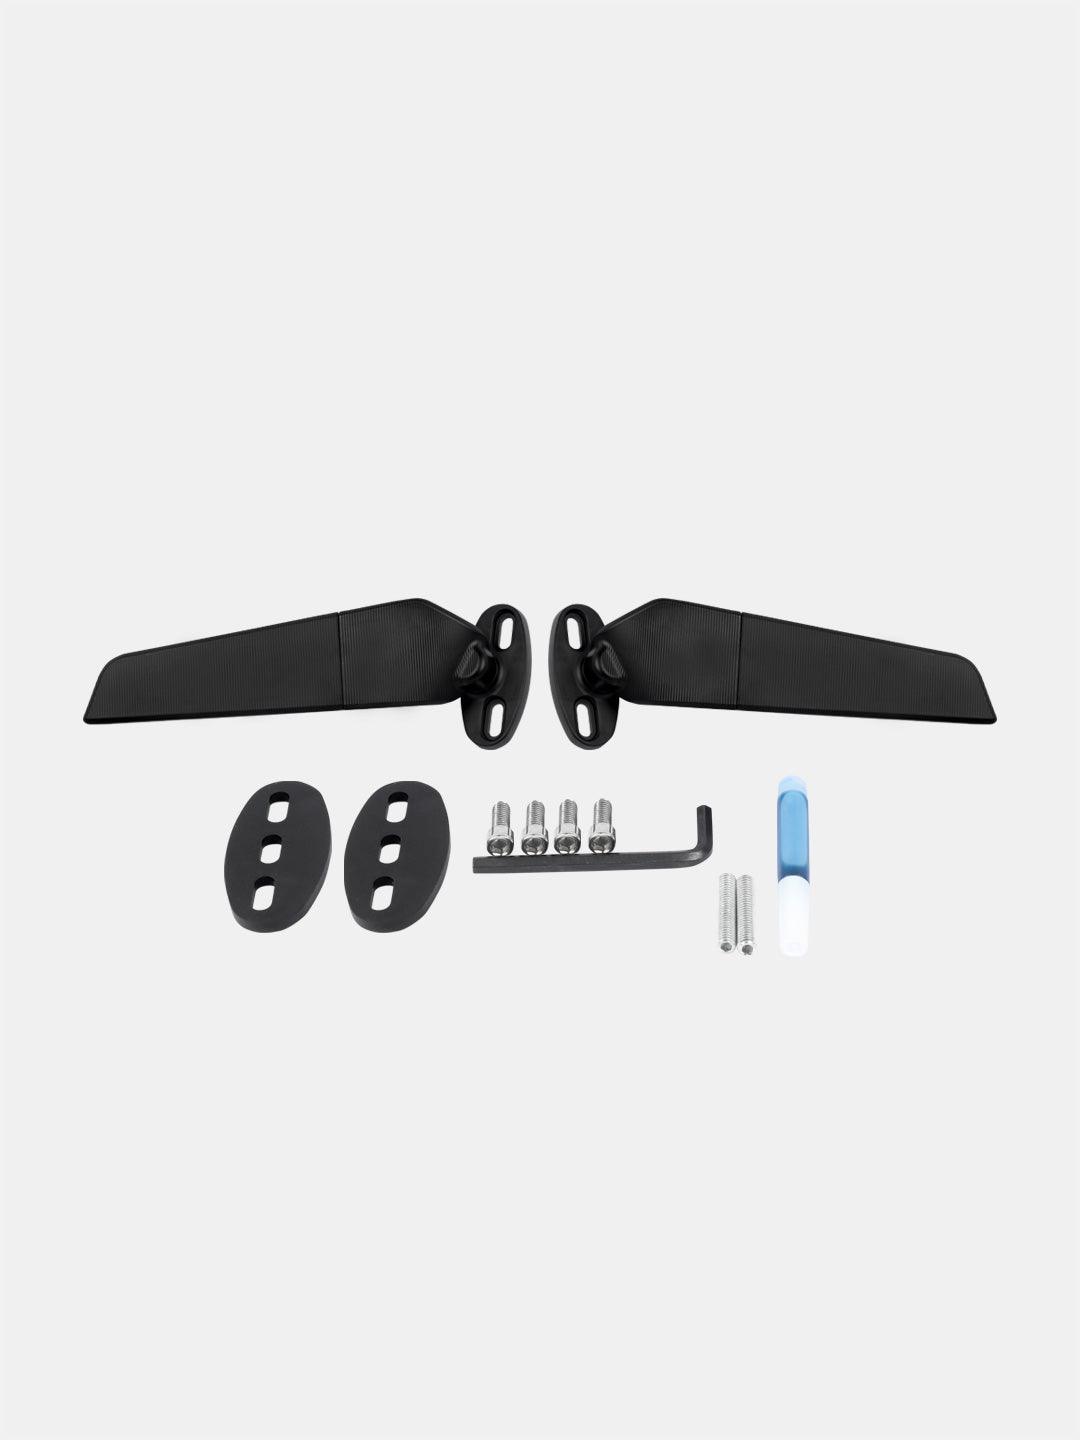 Wing fin economy body fairing kit mirror - Moto Modz